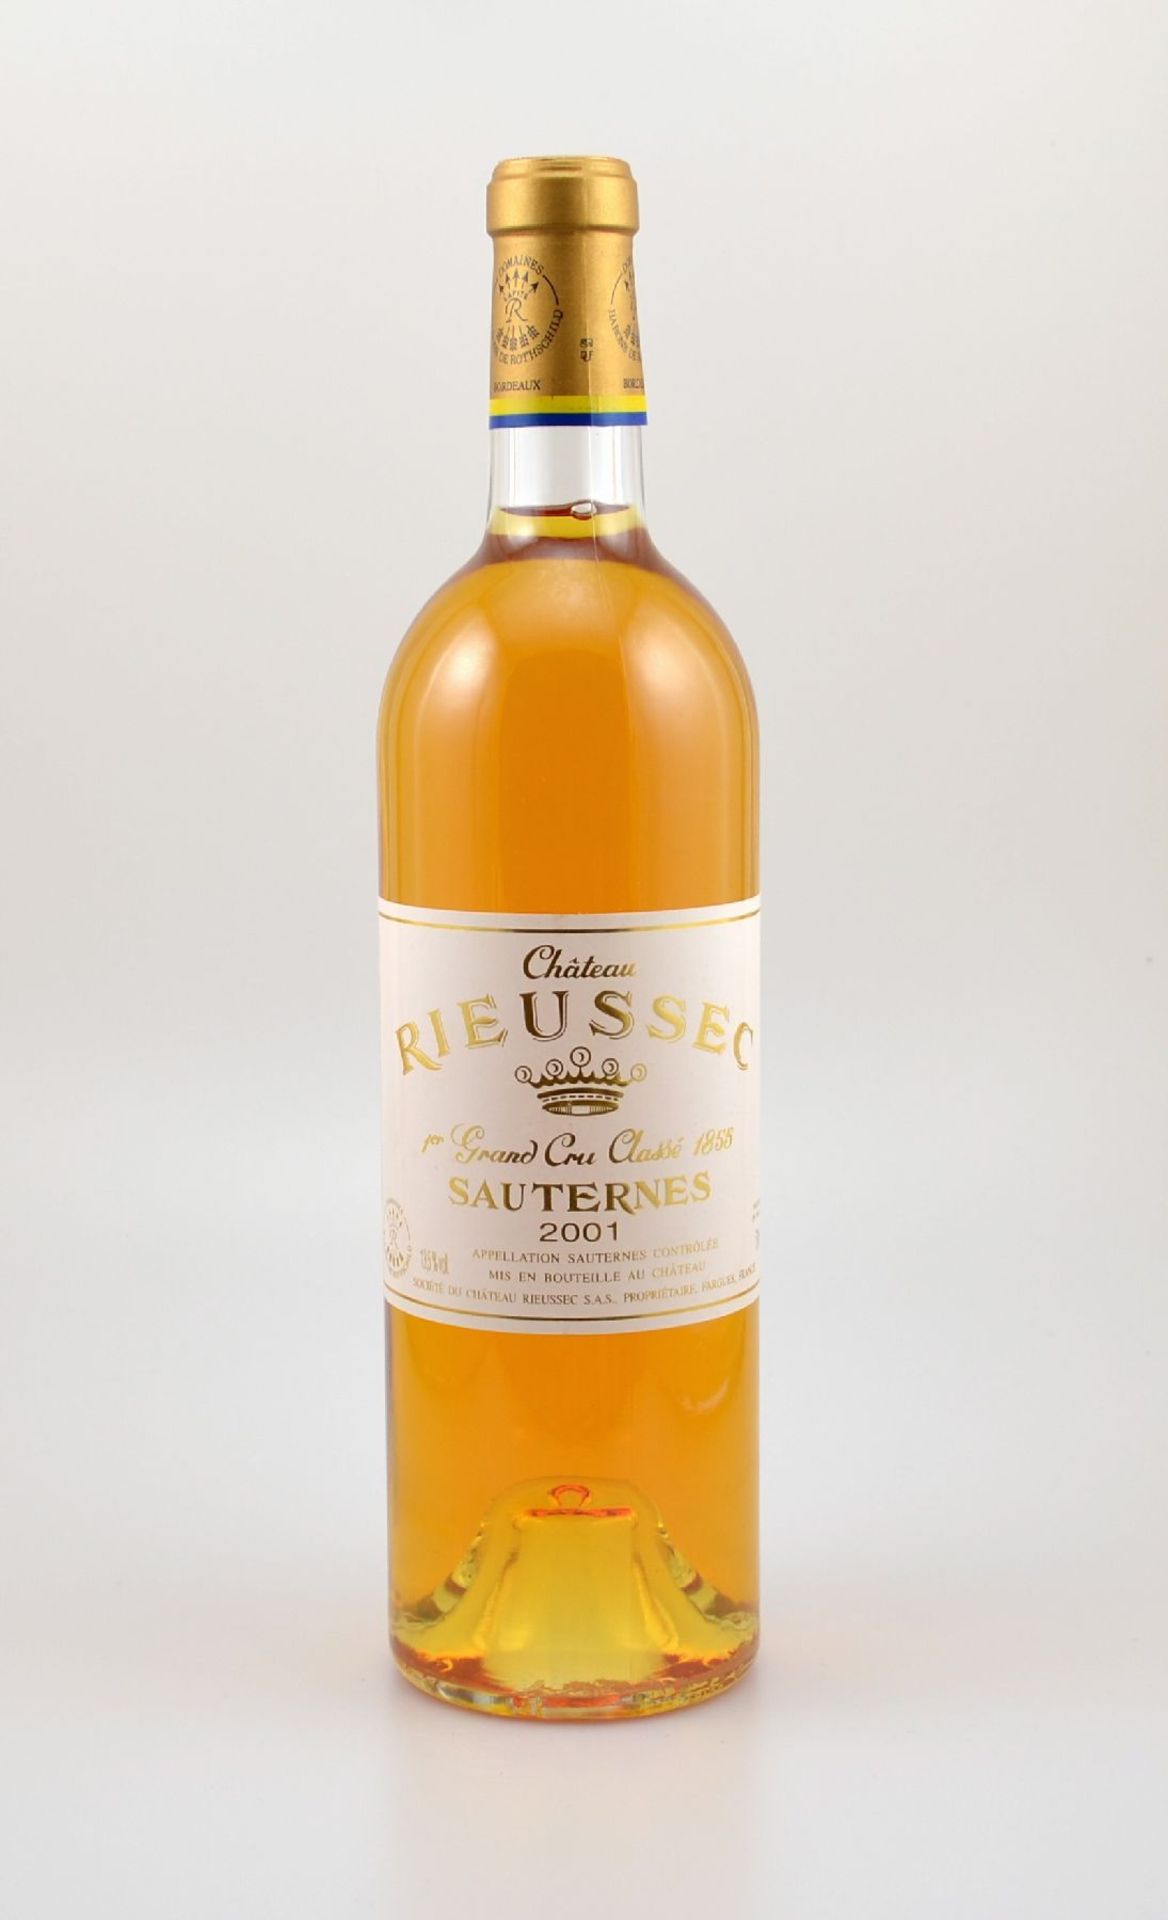 2 Flaschen 2001 Rieussec, Sauternes, 1er Grand Cru Classe, je ca. 75 cl, 13,5 % Vol., Füllstände: je